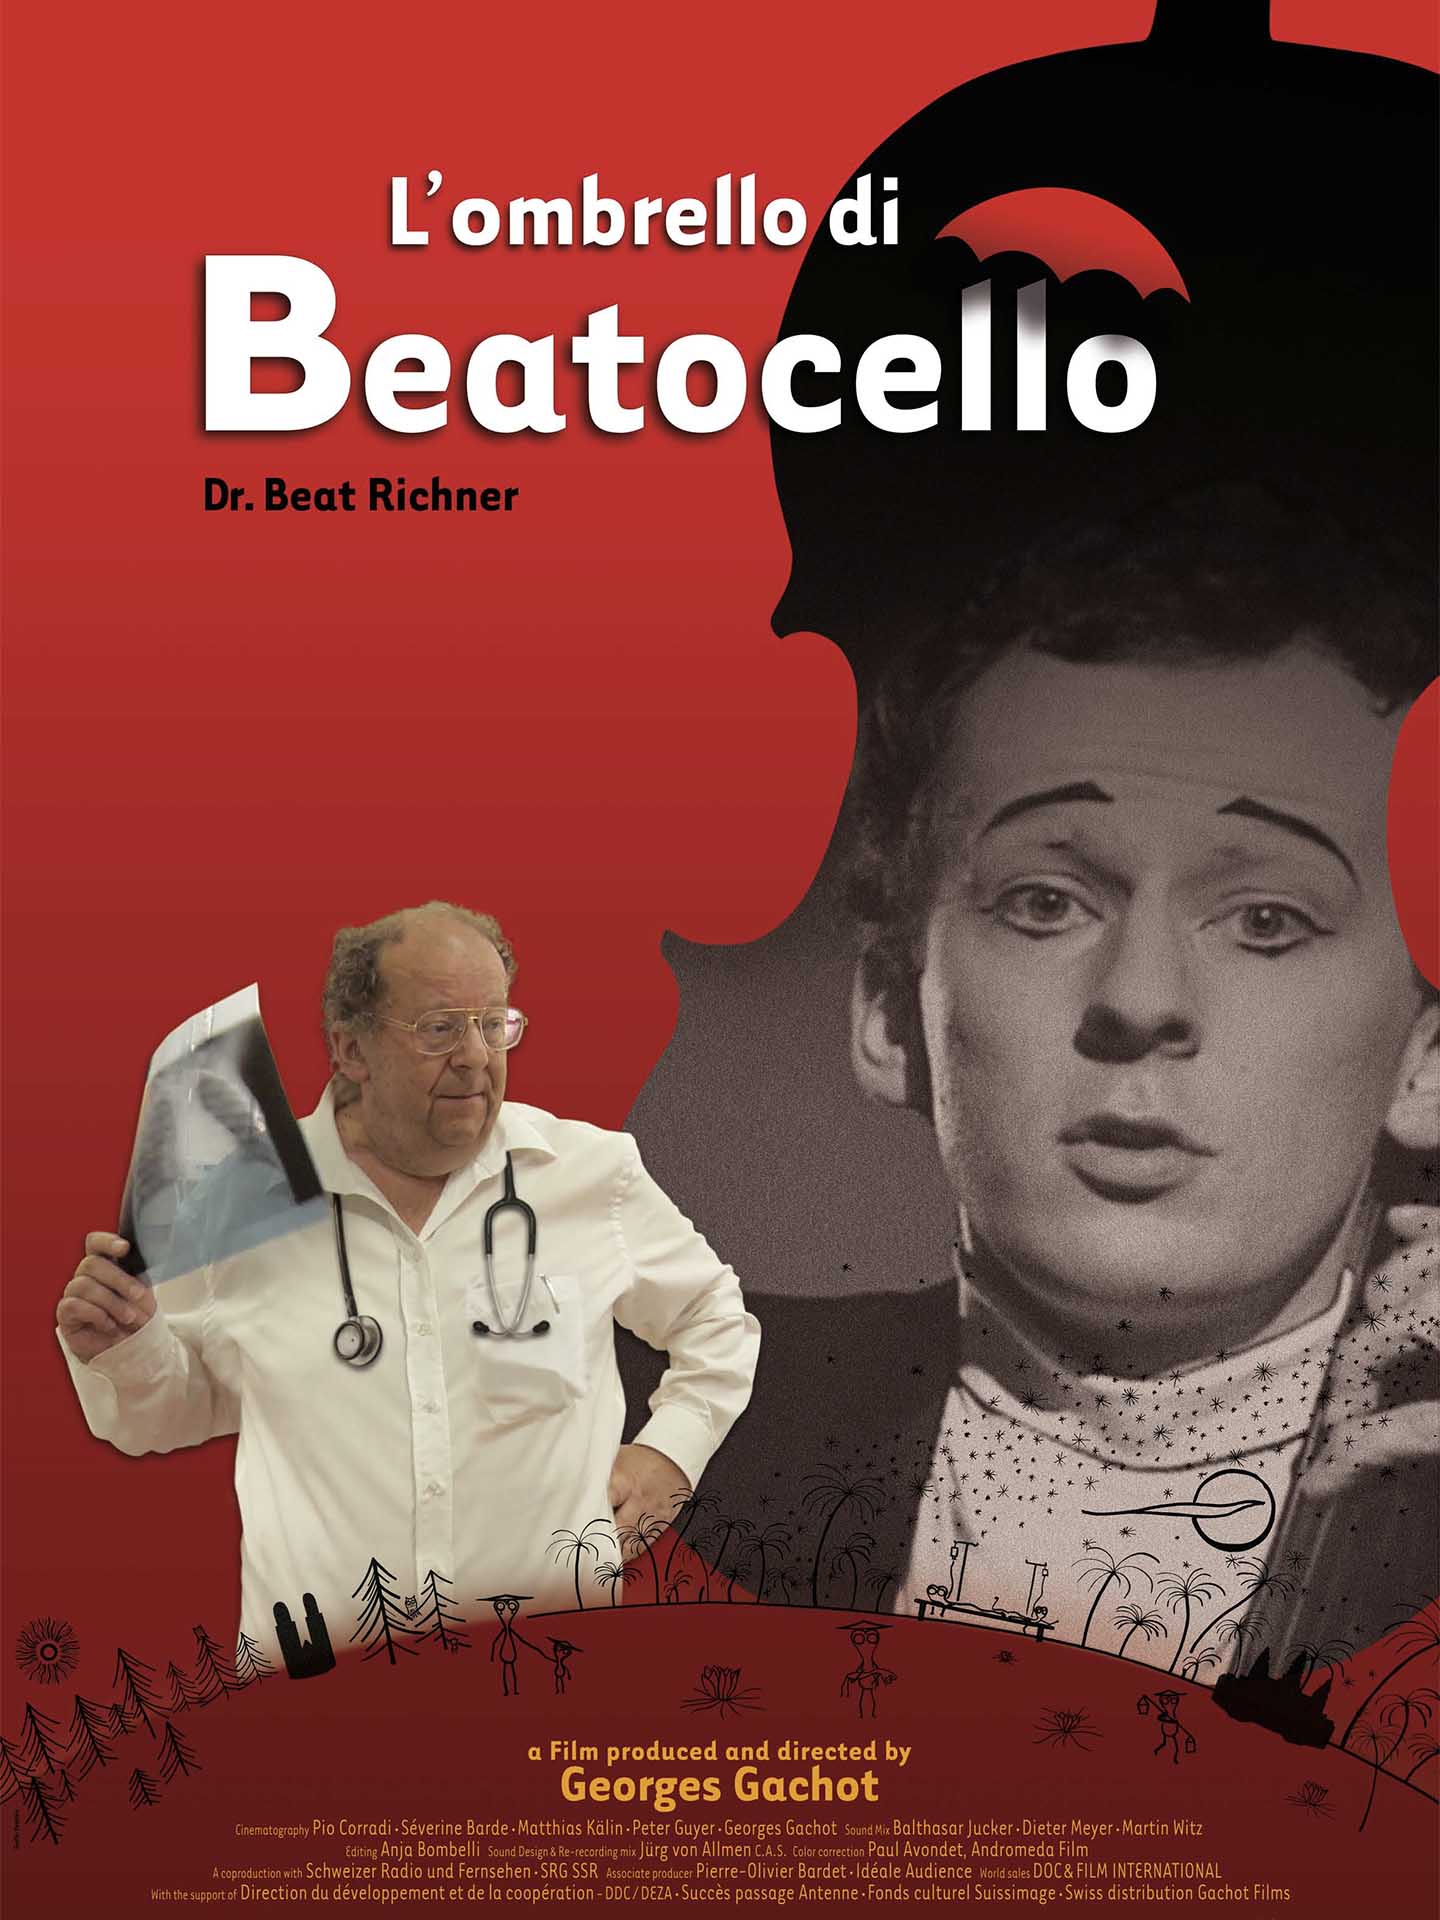 GachotFilms Beaotcello Plakat